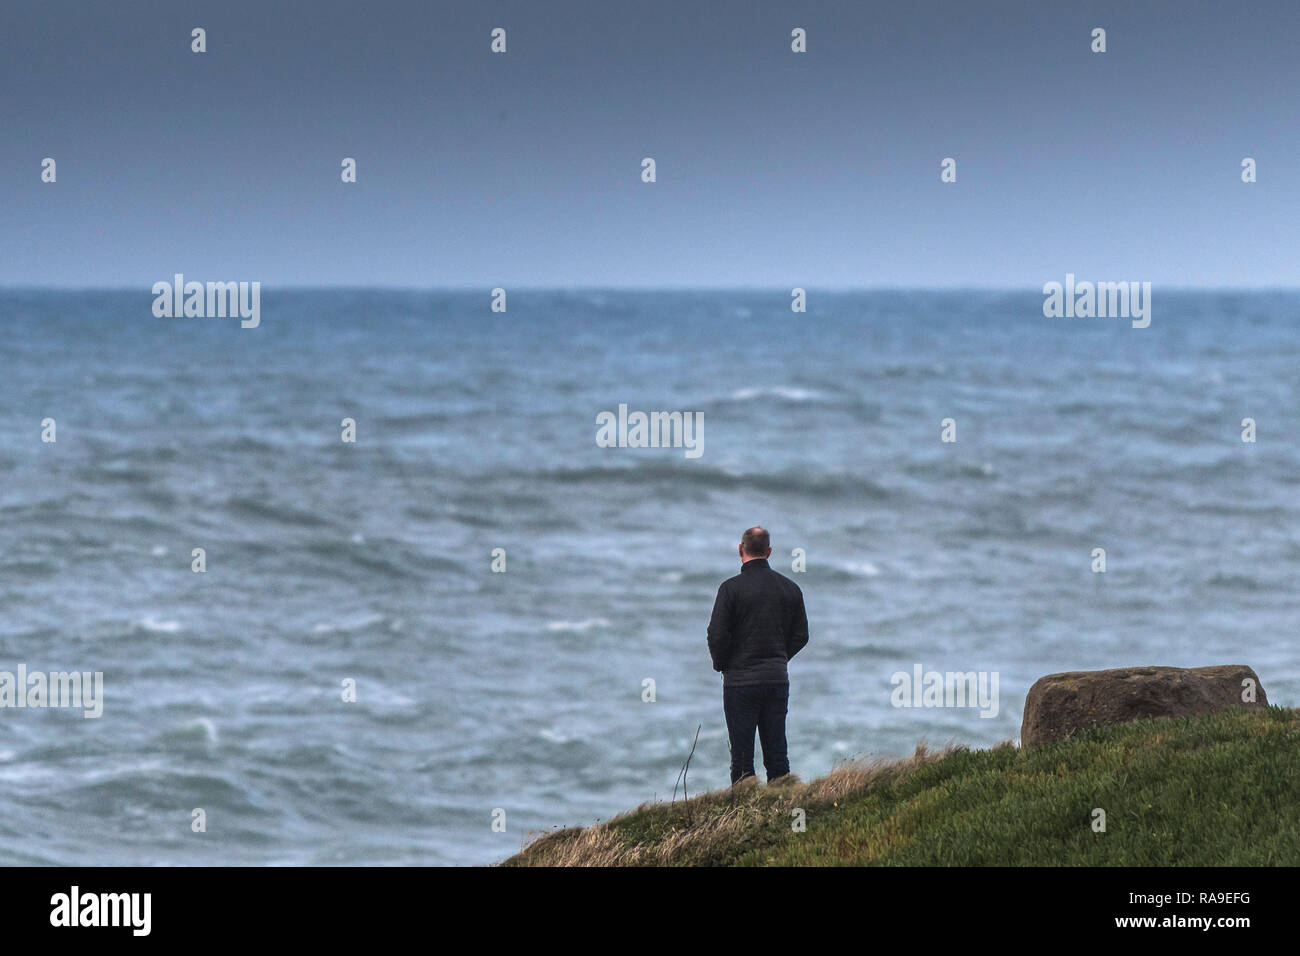 Un homme debout sur un promontoire face à la mer. Banque D'Images